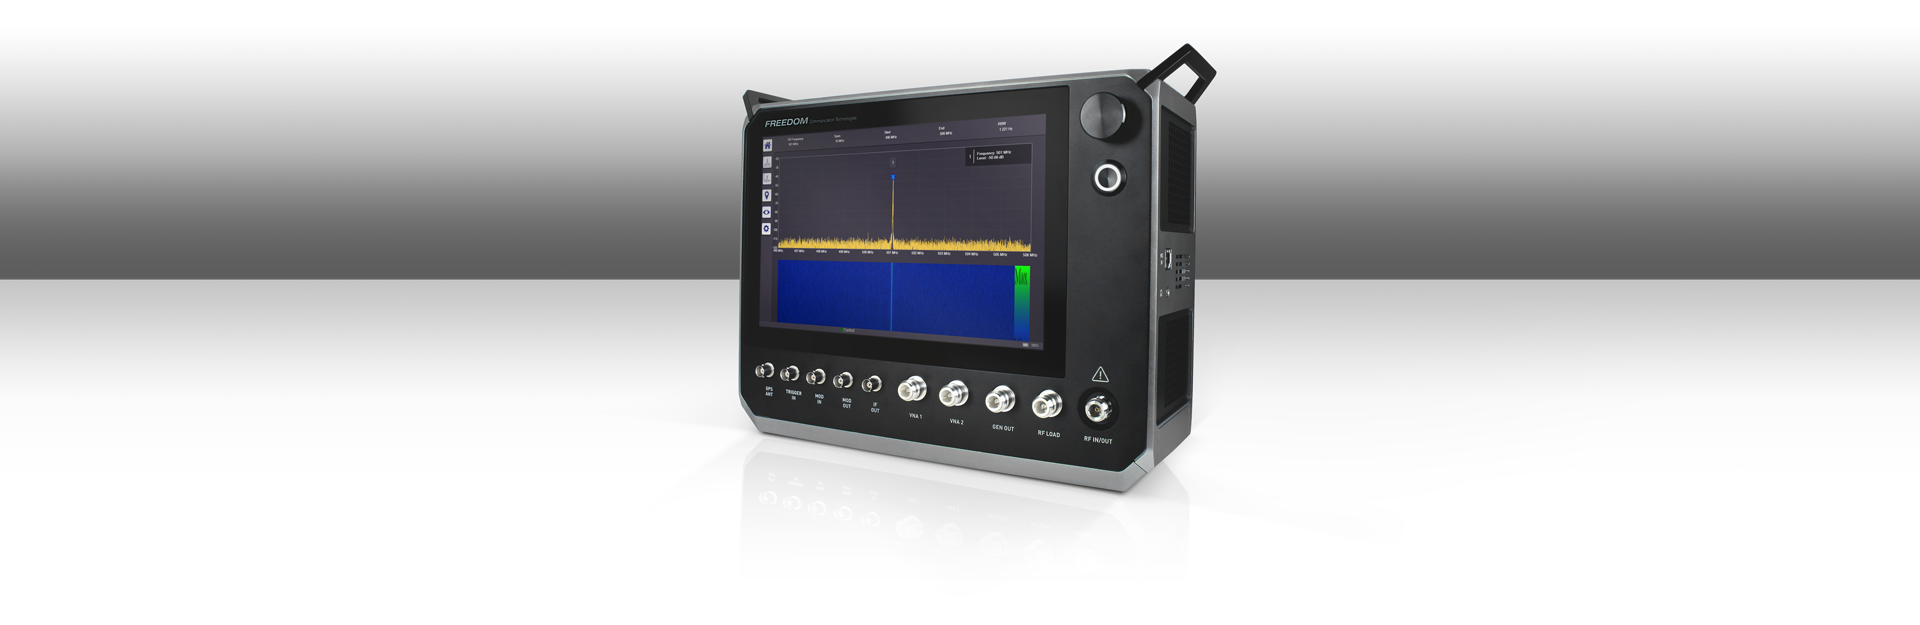 Тестер радиосвязи аналоговых/цифровых стандартов Freedom R9000 с диапазоном частот 10 МГц - 6 ГГц